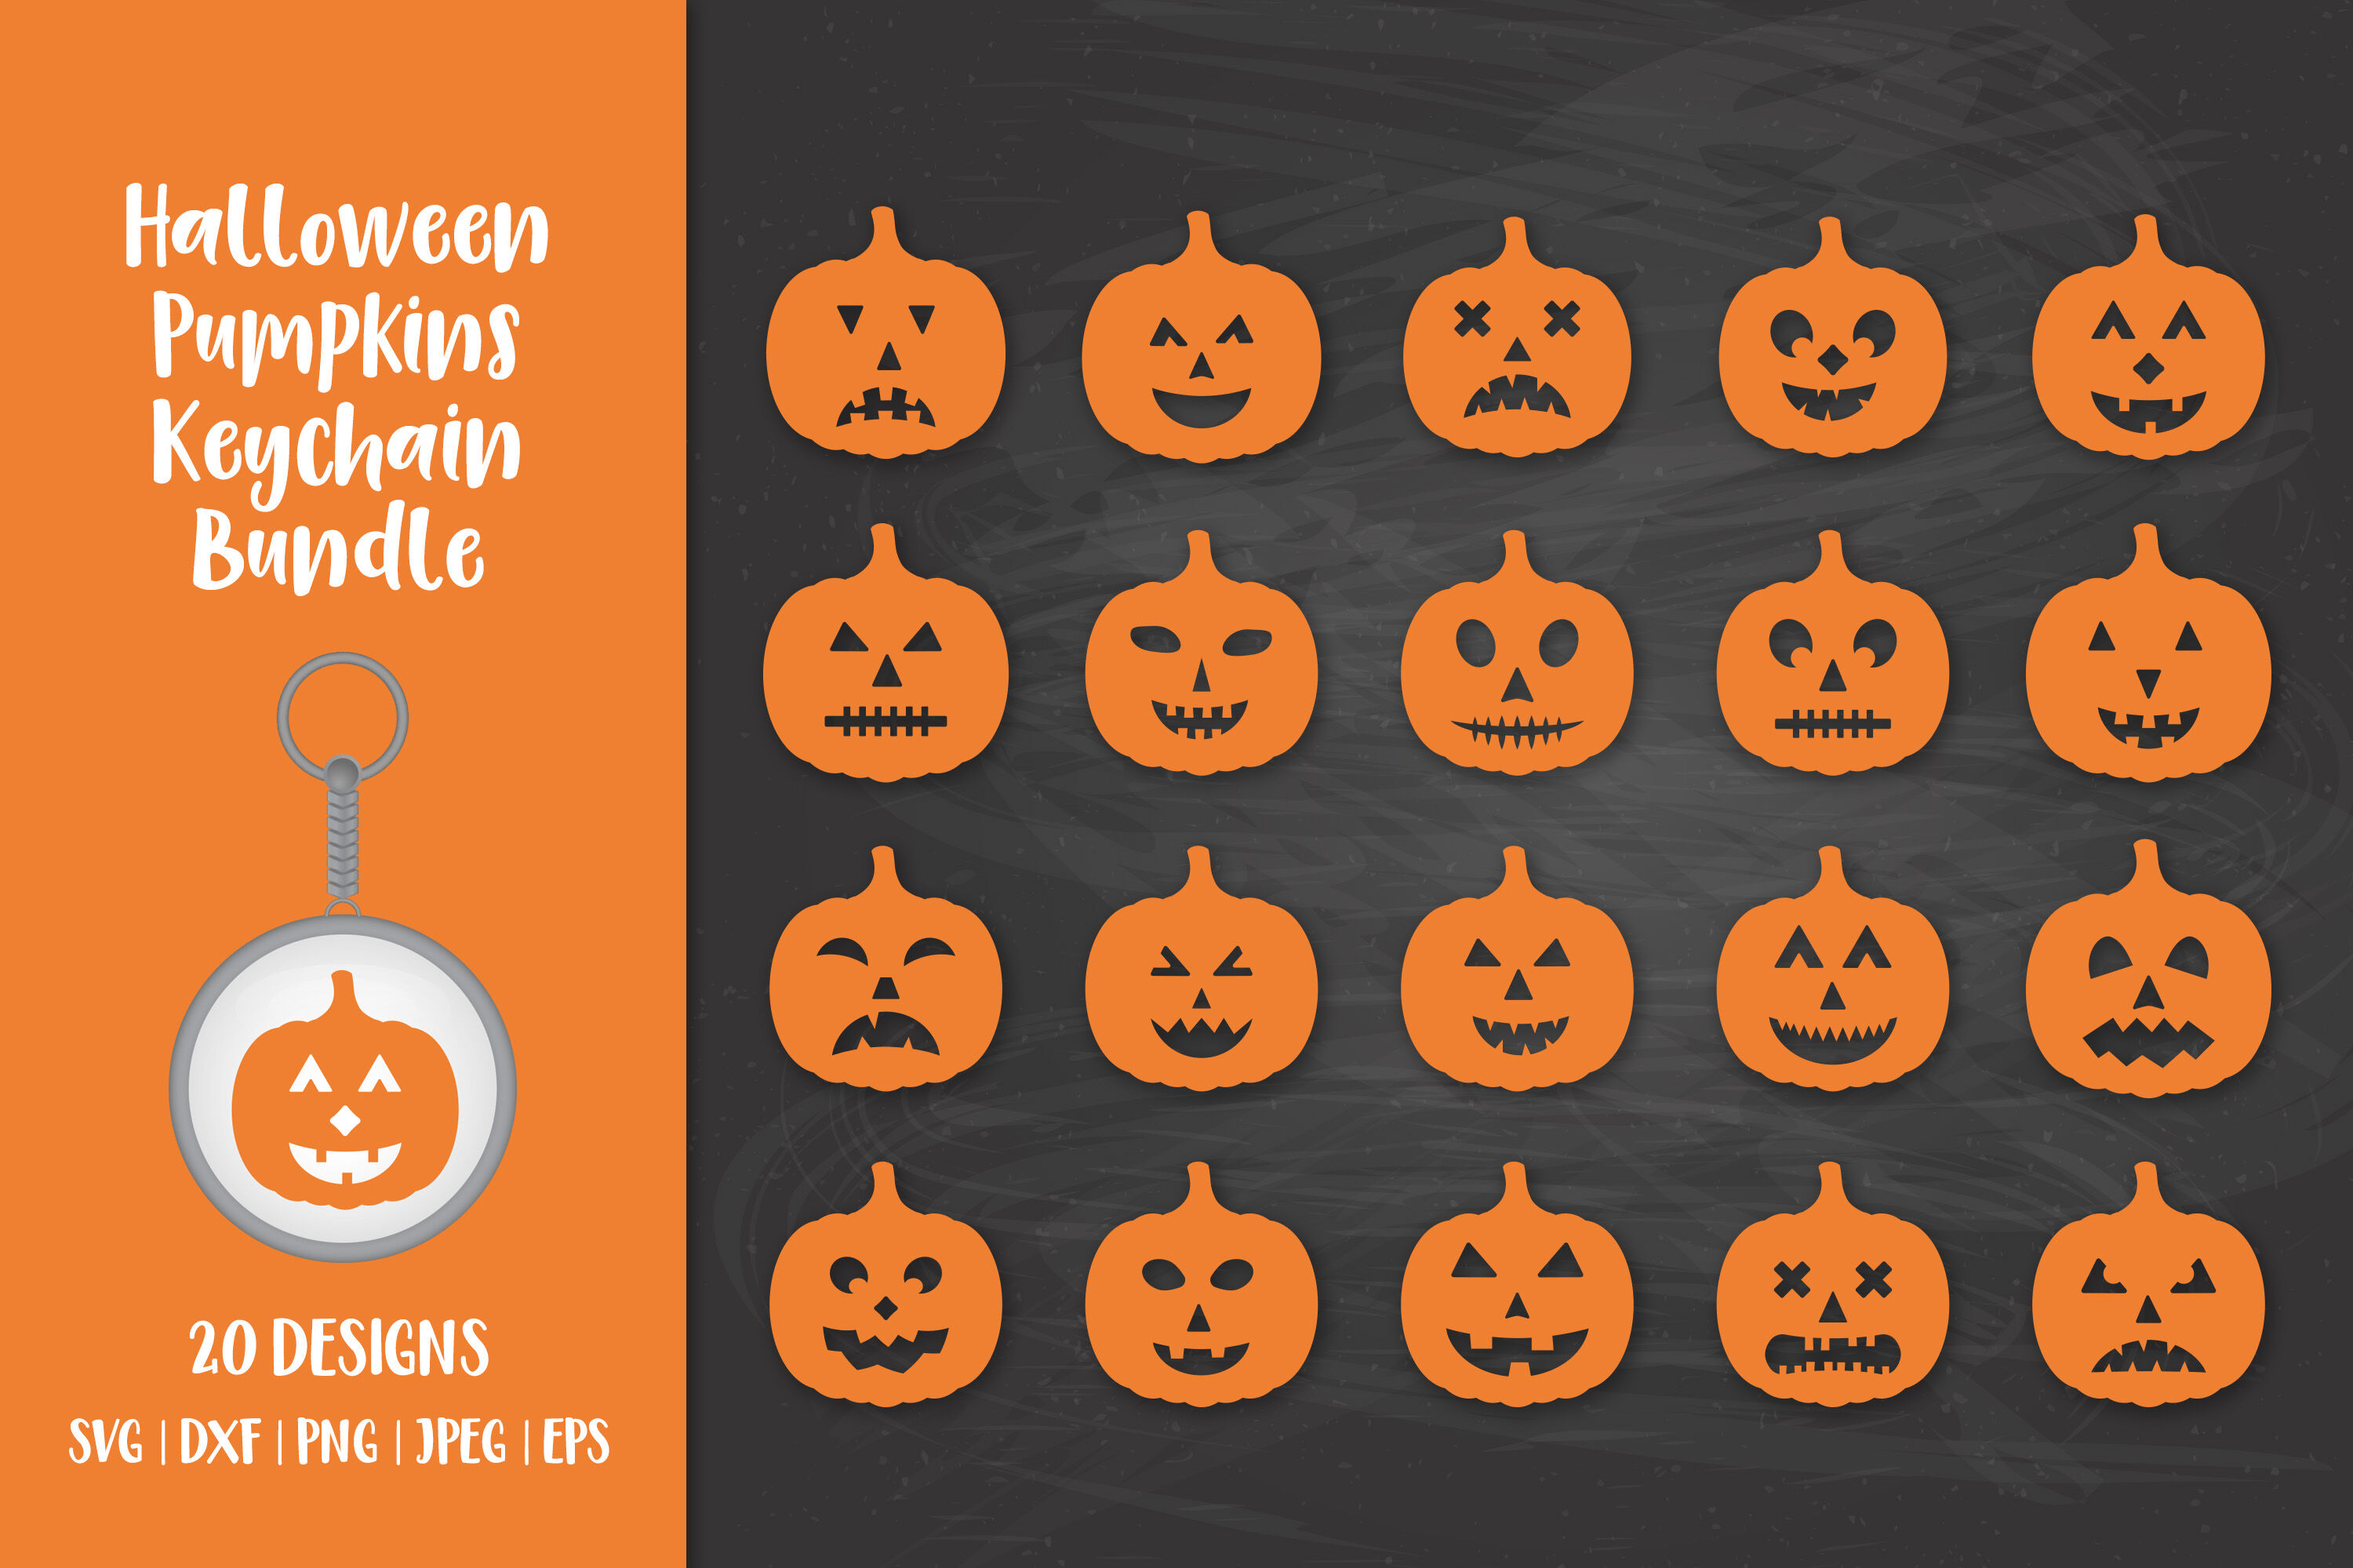 Halloween keychain bundle SVG. Halloween pumpkins keychains By